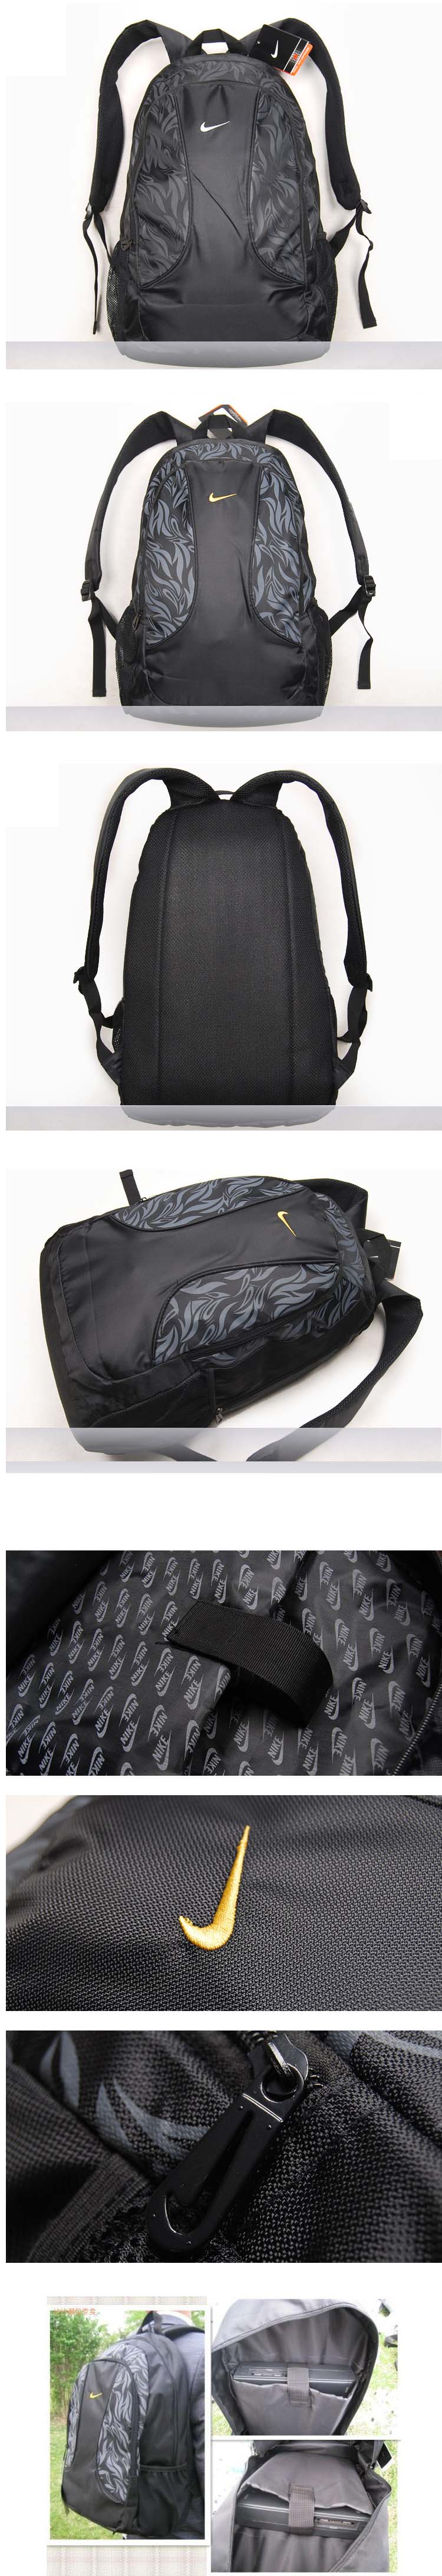 jual tas ransel nike model baru dengan corak batik terdapat tempat laptop dan mampu memuat laptop hingga 14" 